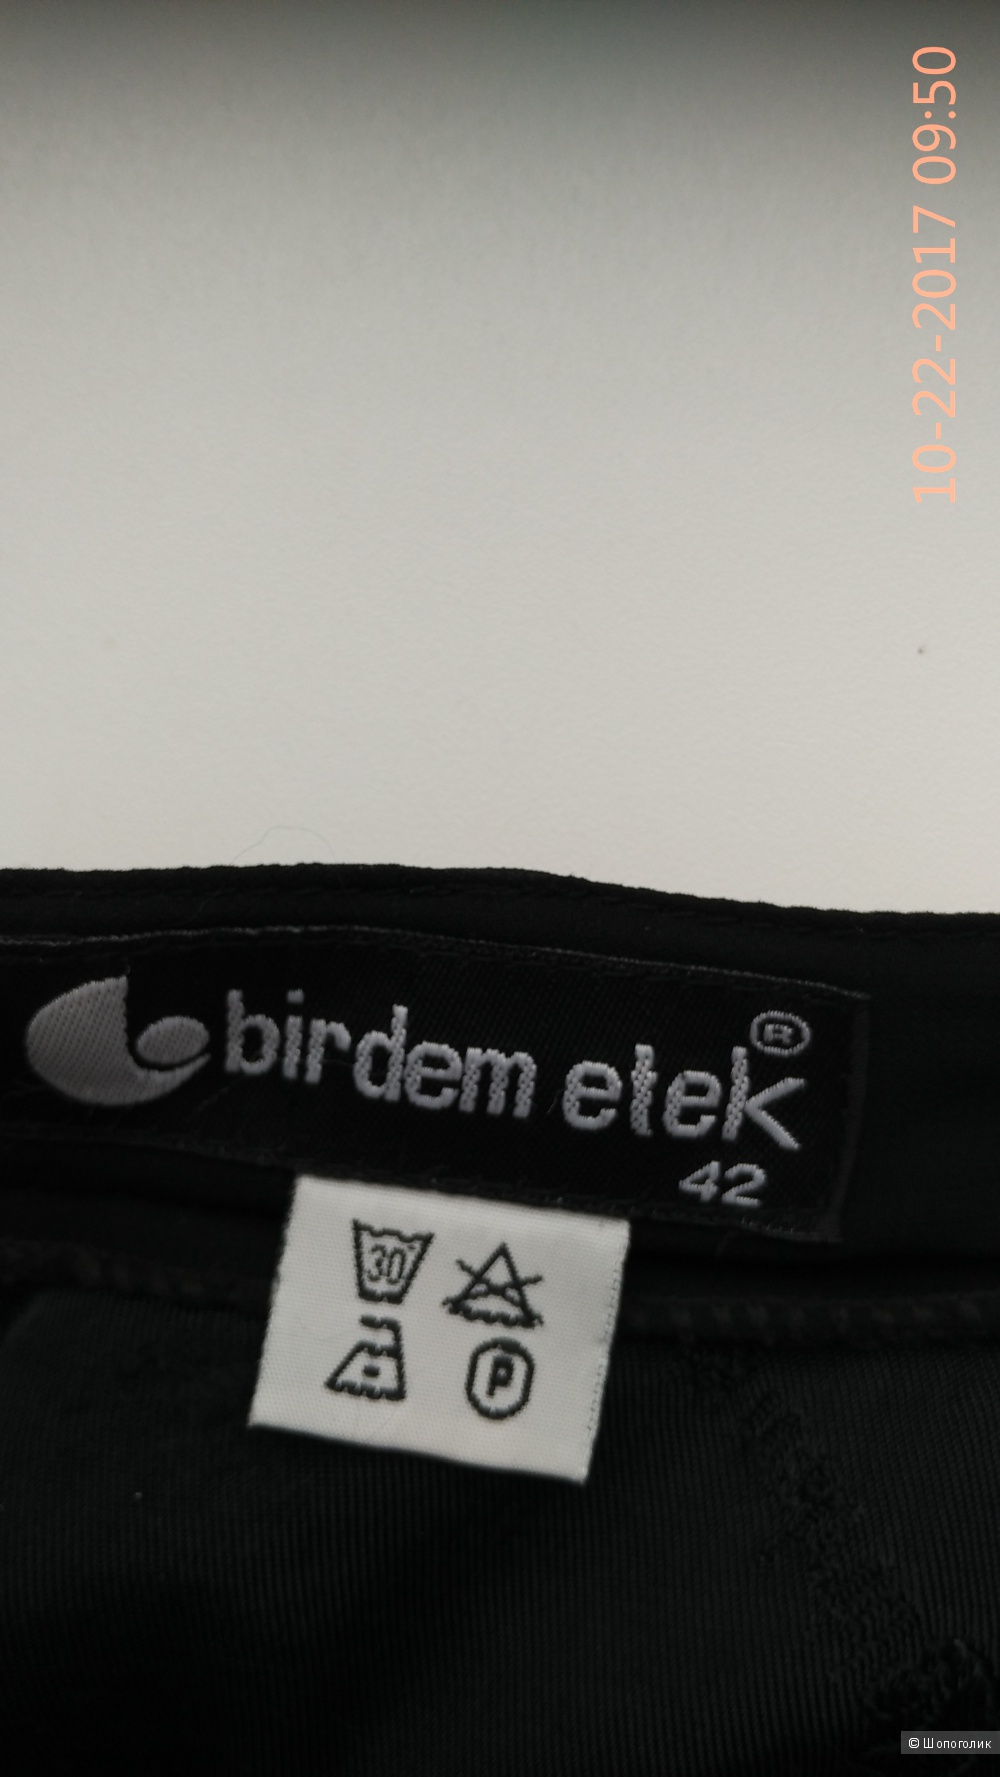 Черная юбка, Birdem etek, Турция размер 42-44